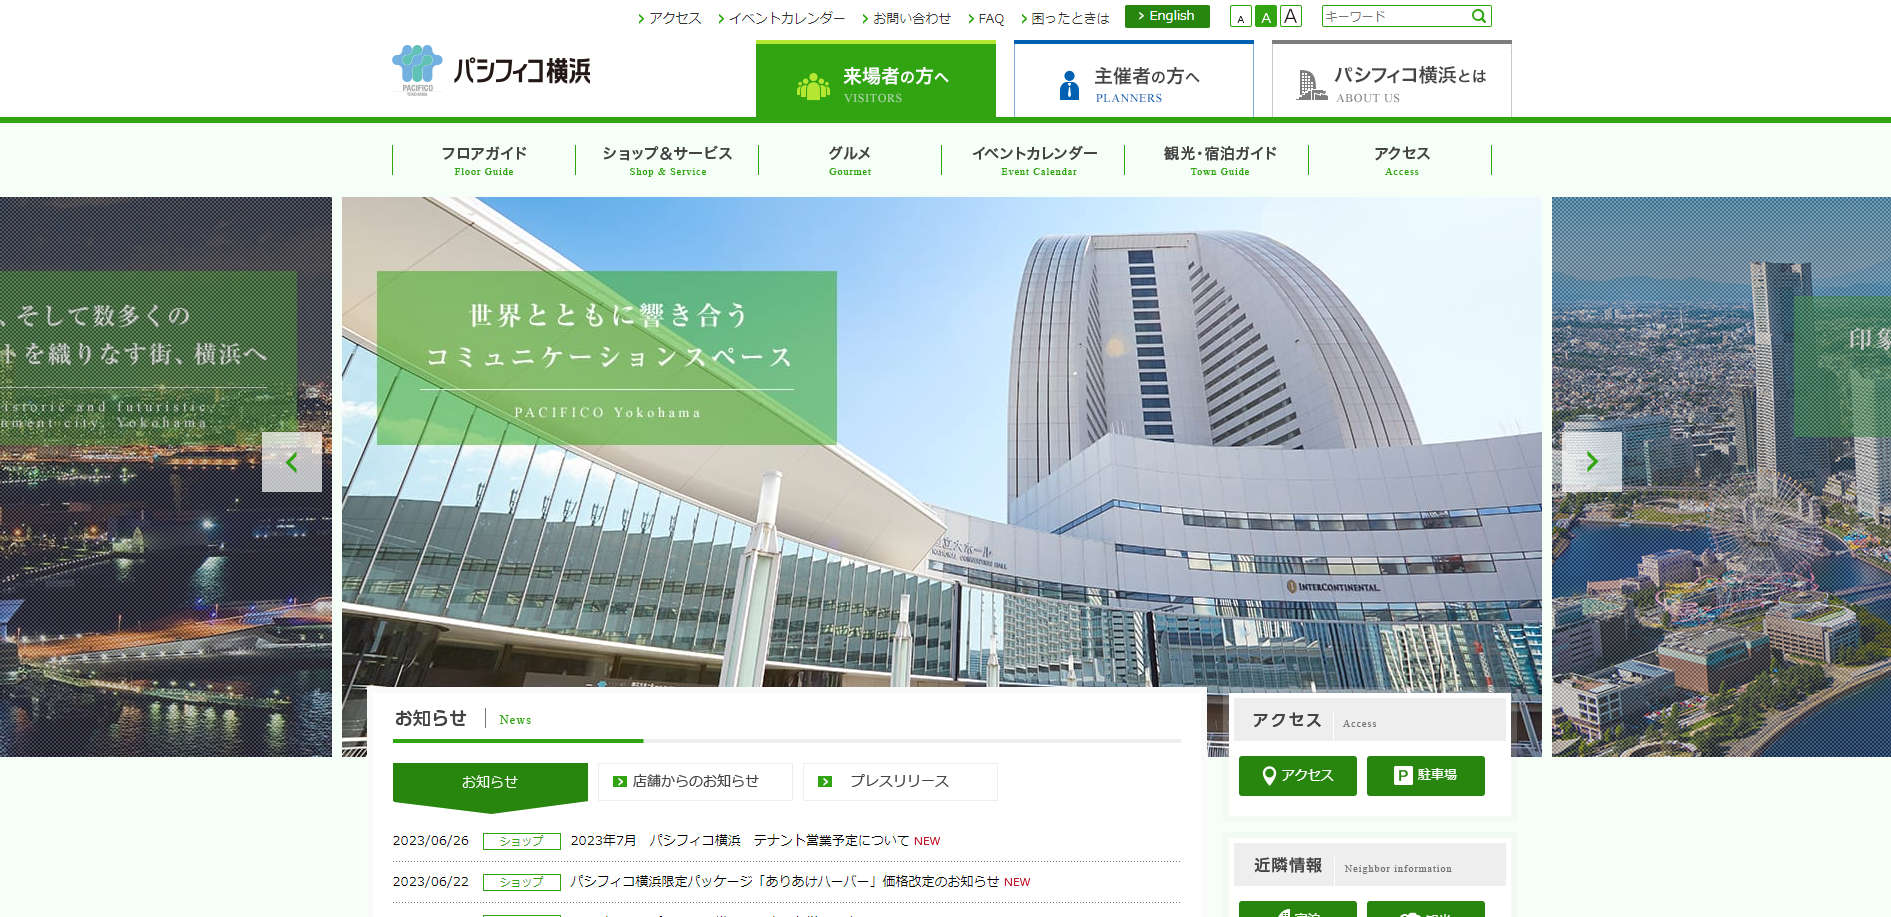 株式会社 横浜国際平和会議場の予約システム開発